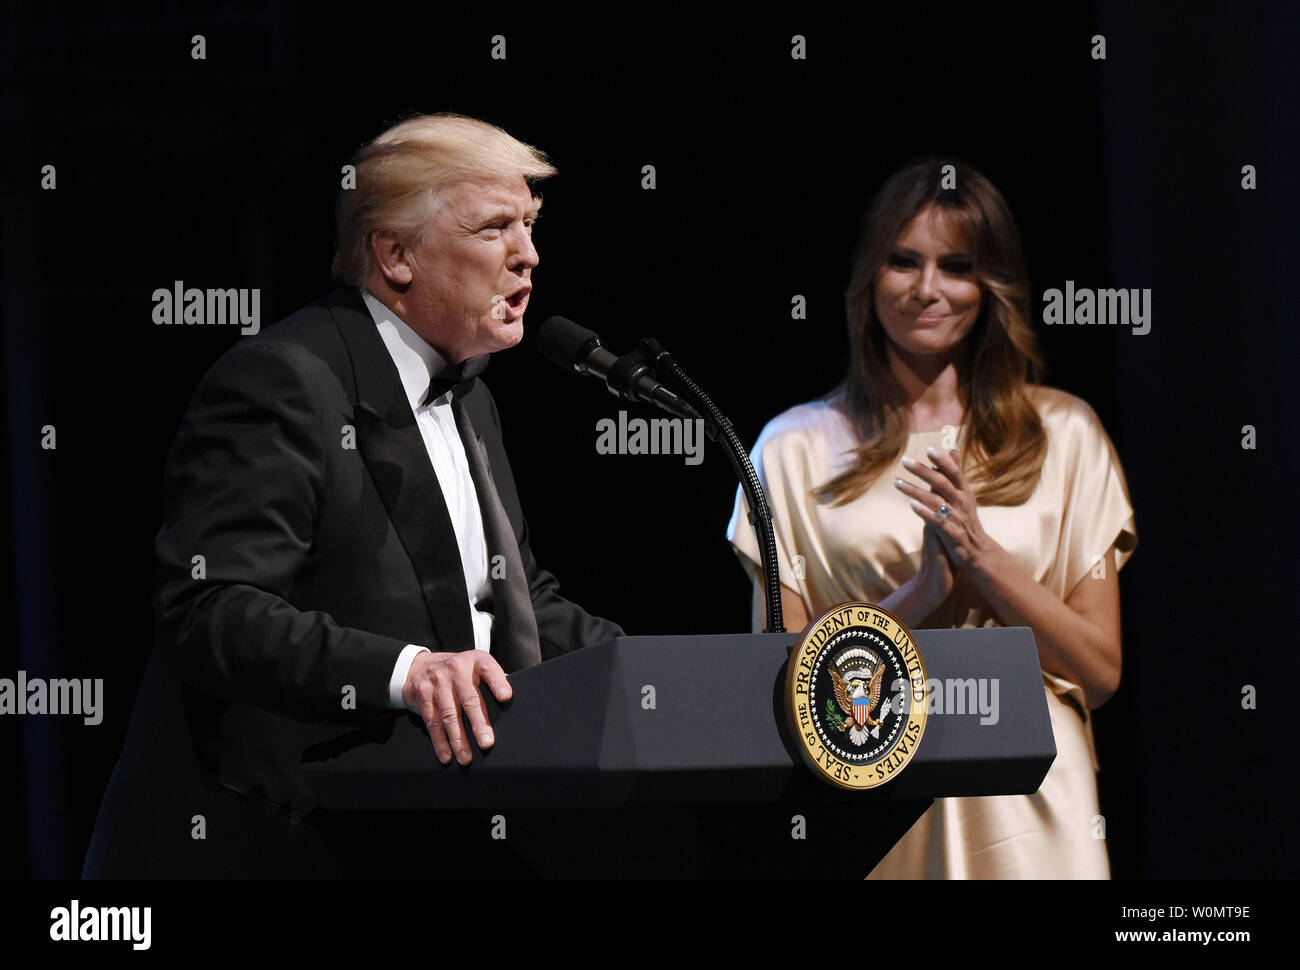 Präsident Donald Trump spricht als Erste Dame Melania Trump auf während der jährlichen Gala im Ford Theater Präsident Abraham Lincoln's Legacy am 4. Juni zu Ehren aussieht, 2017 in Washington, DC. Foto von Olivier Douliery/UPI Stockfoto